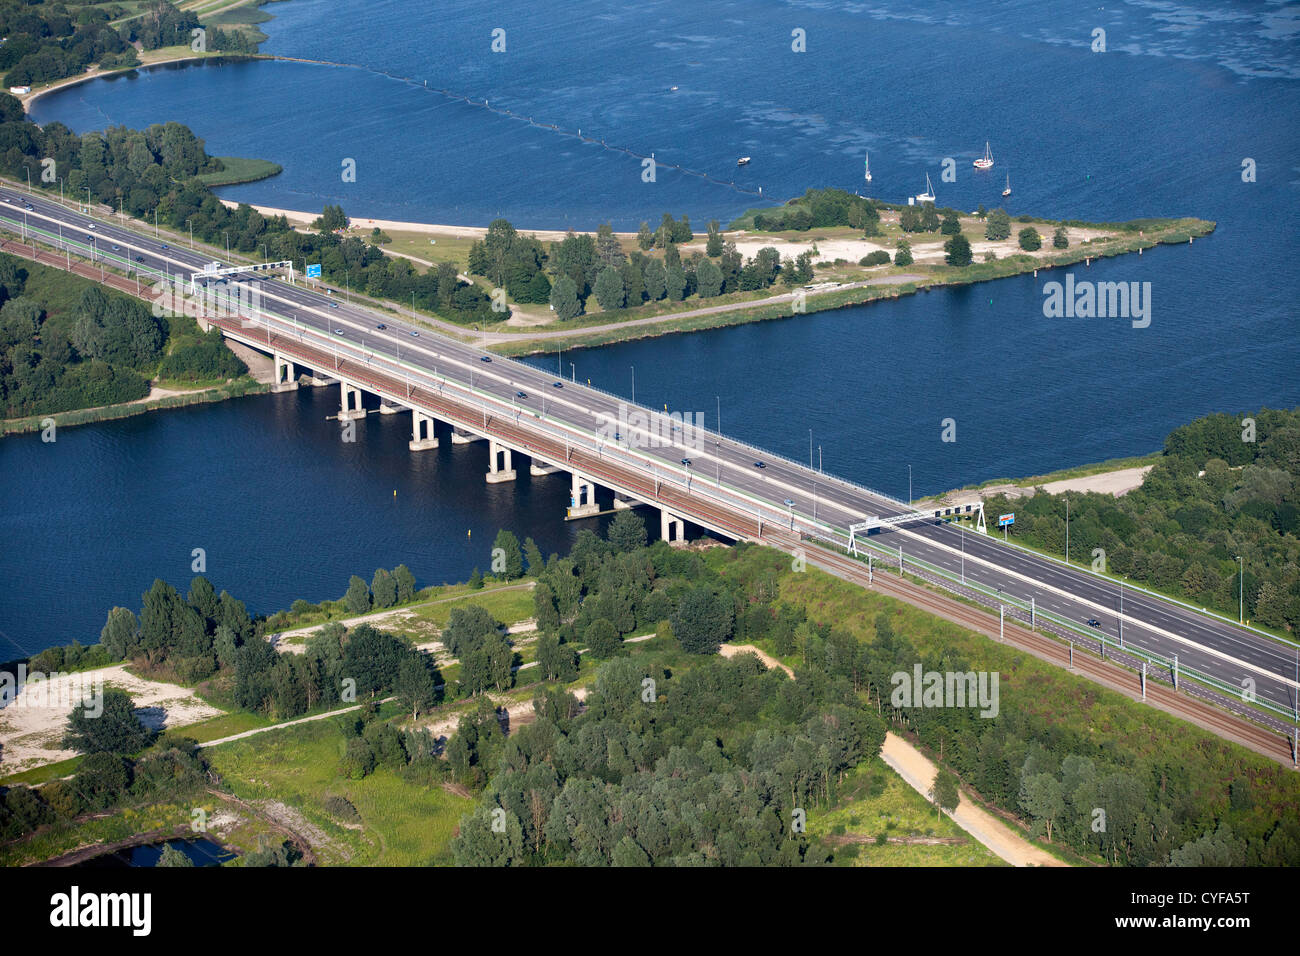 Los Países Bajos, Muiderberg Puente, llamado Puente de Holanda (Hollandse Brug) cruzando el lago Gooimeer. Autopista A6. Foto de stock